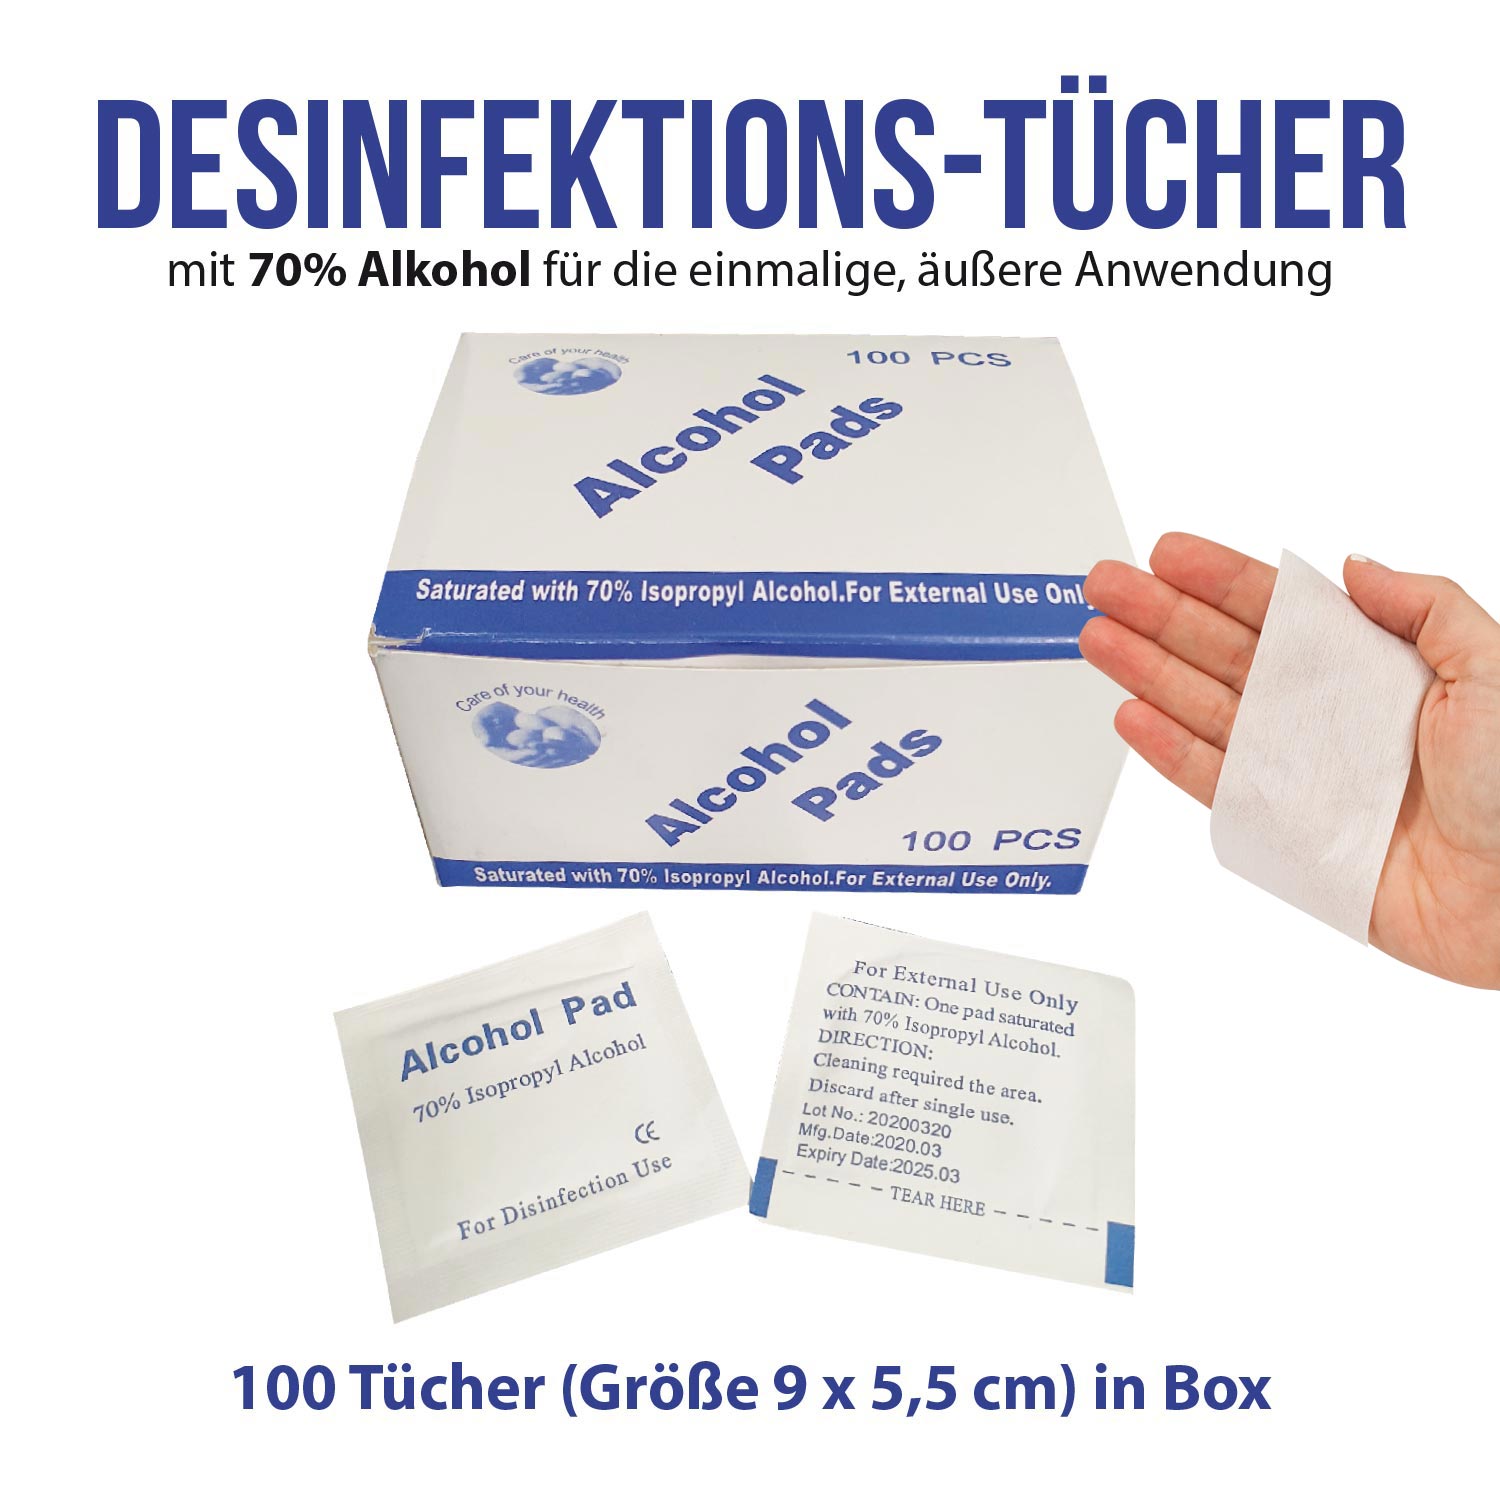 Desinfektionstücher 100 Stück Box